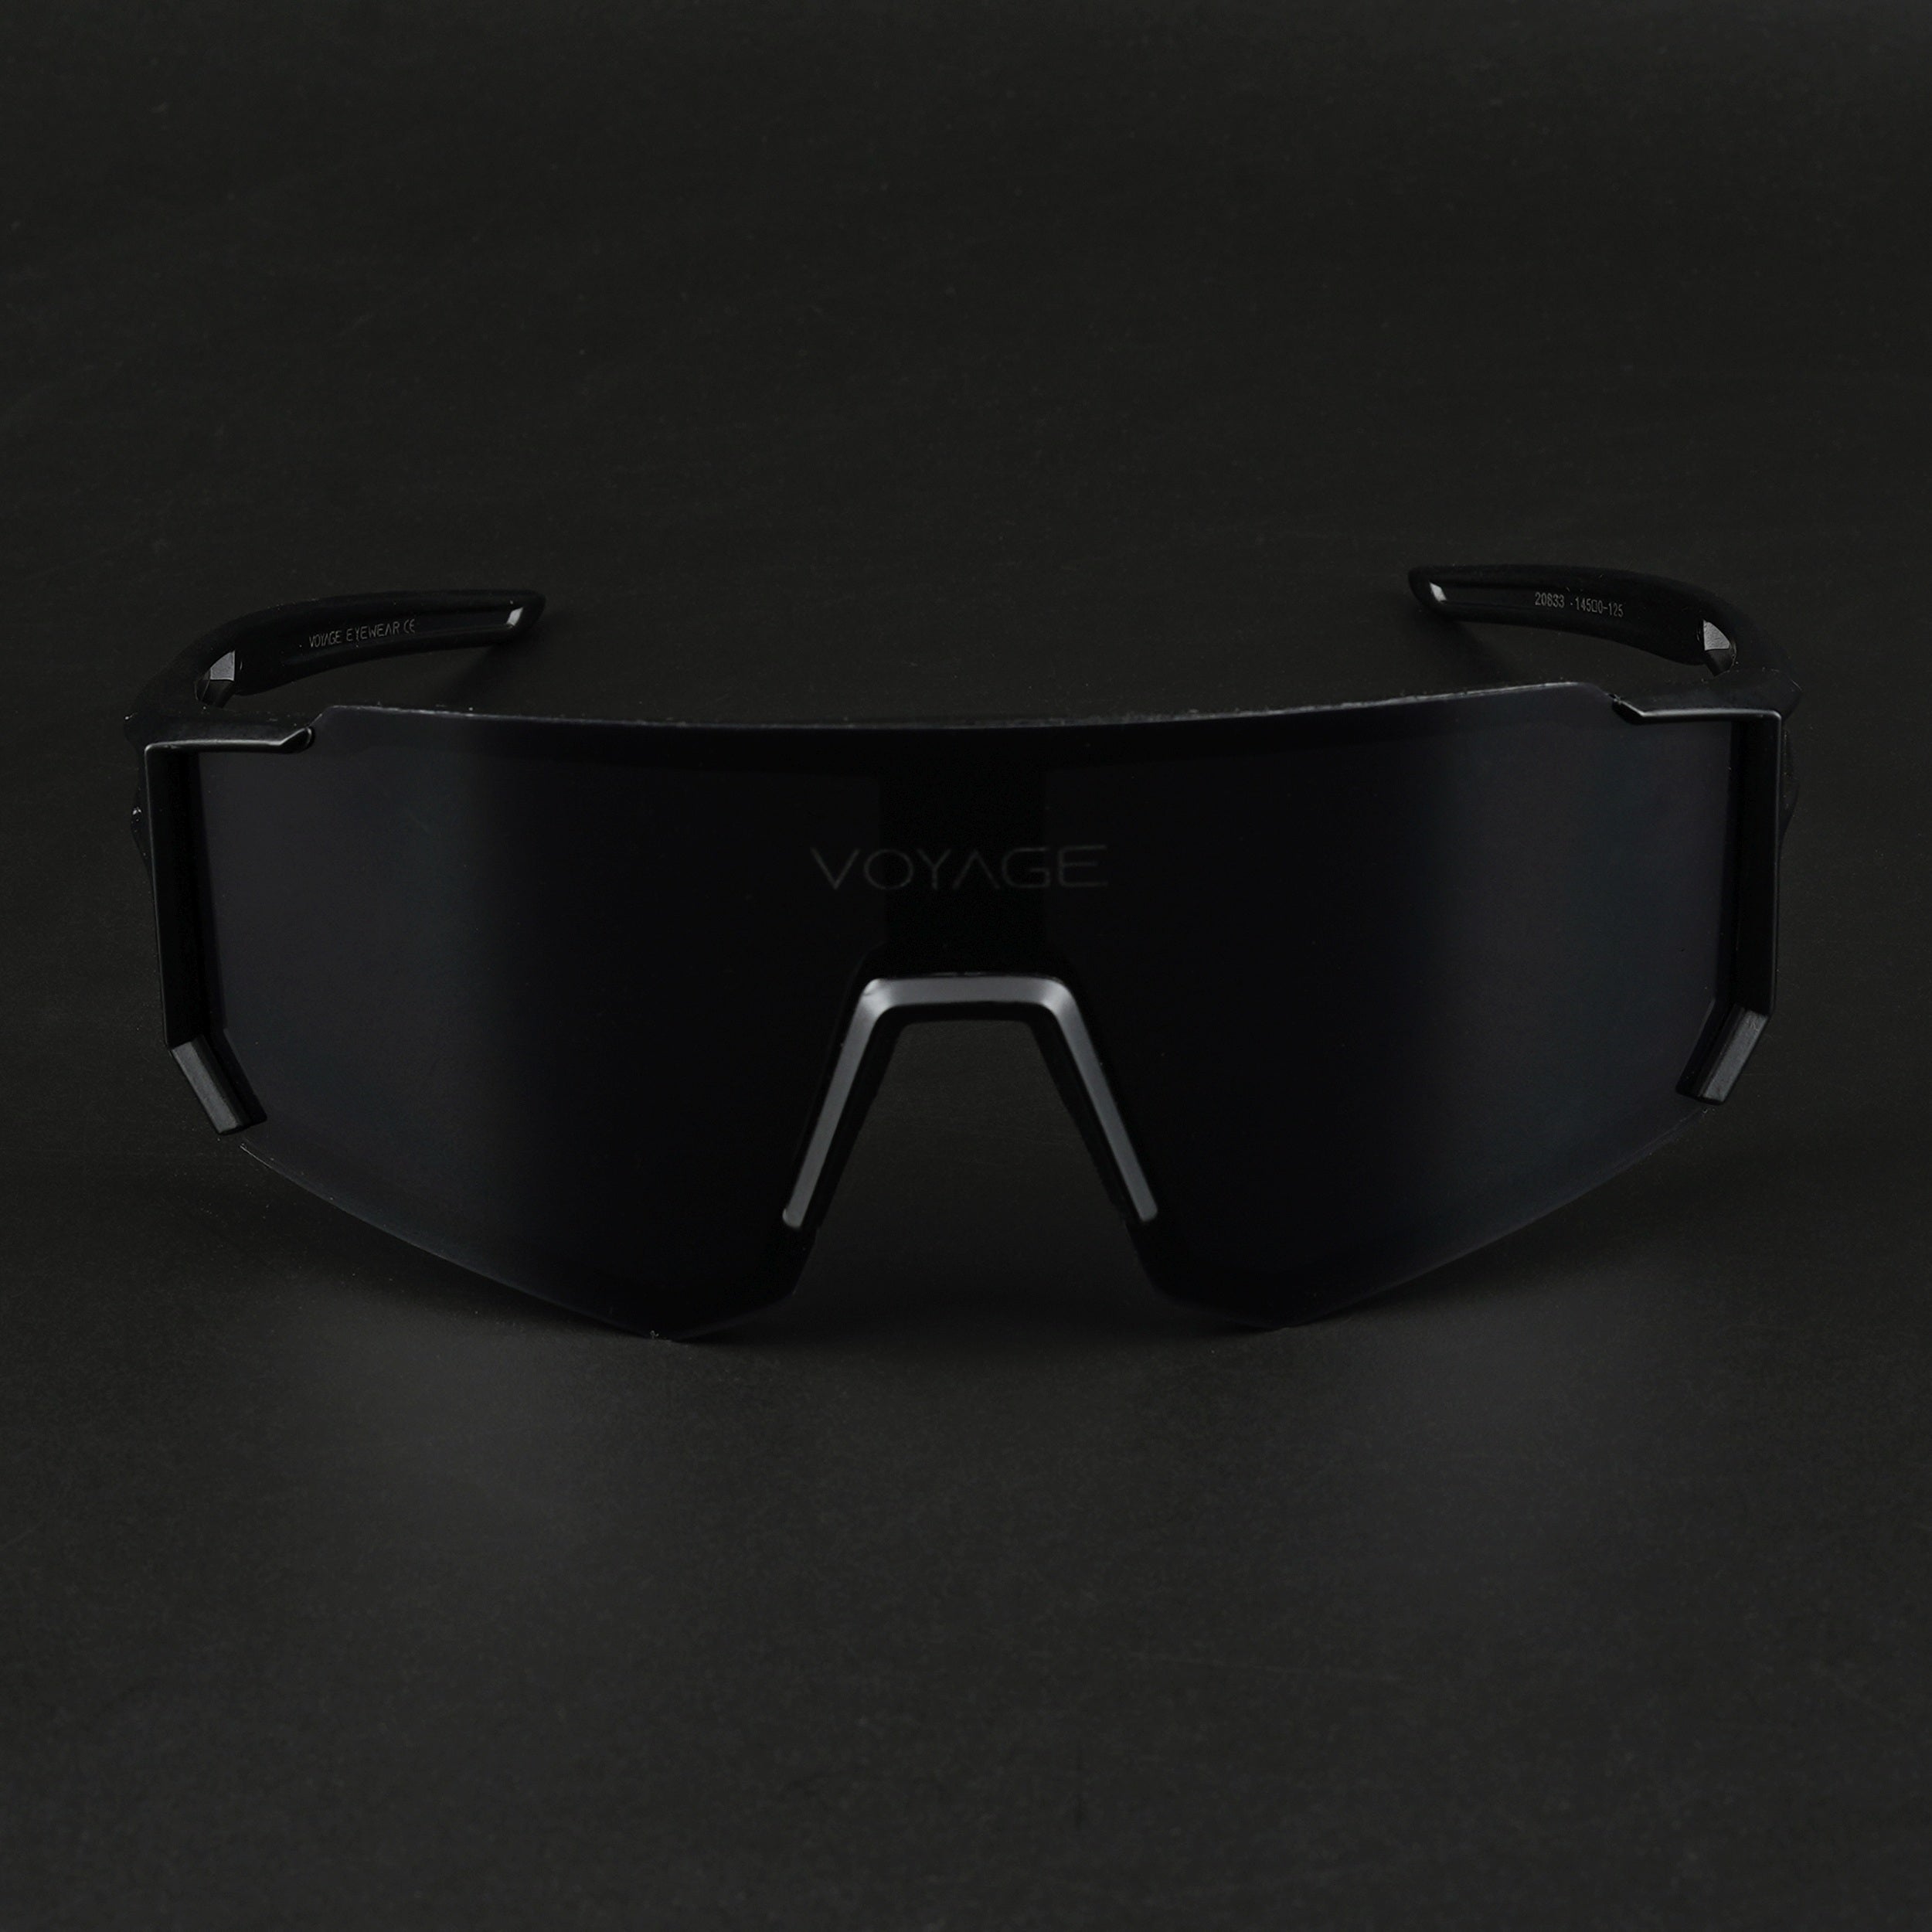 Voyage Drift Sunglasses for Men & Women (Black Lens | Black Frame - MG5617)